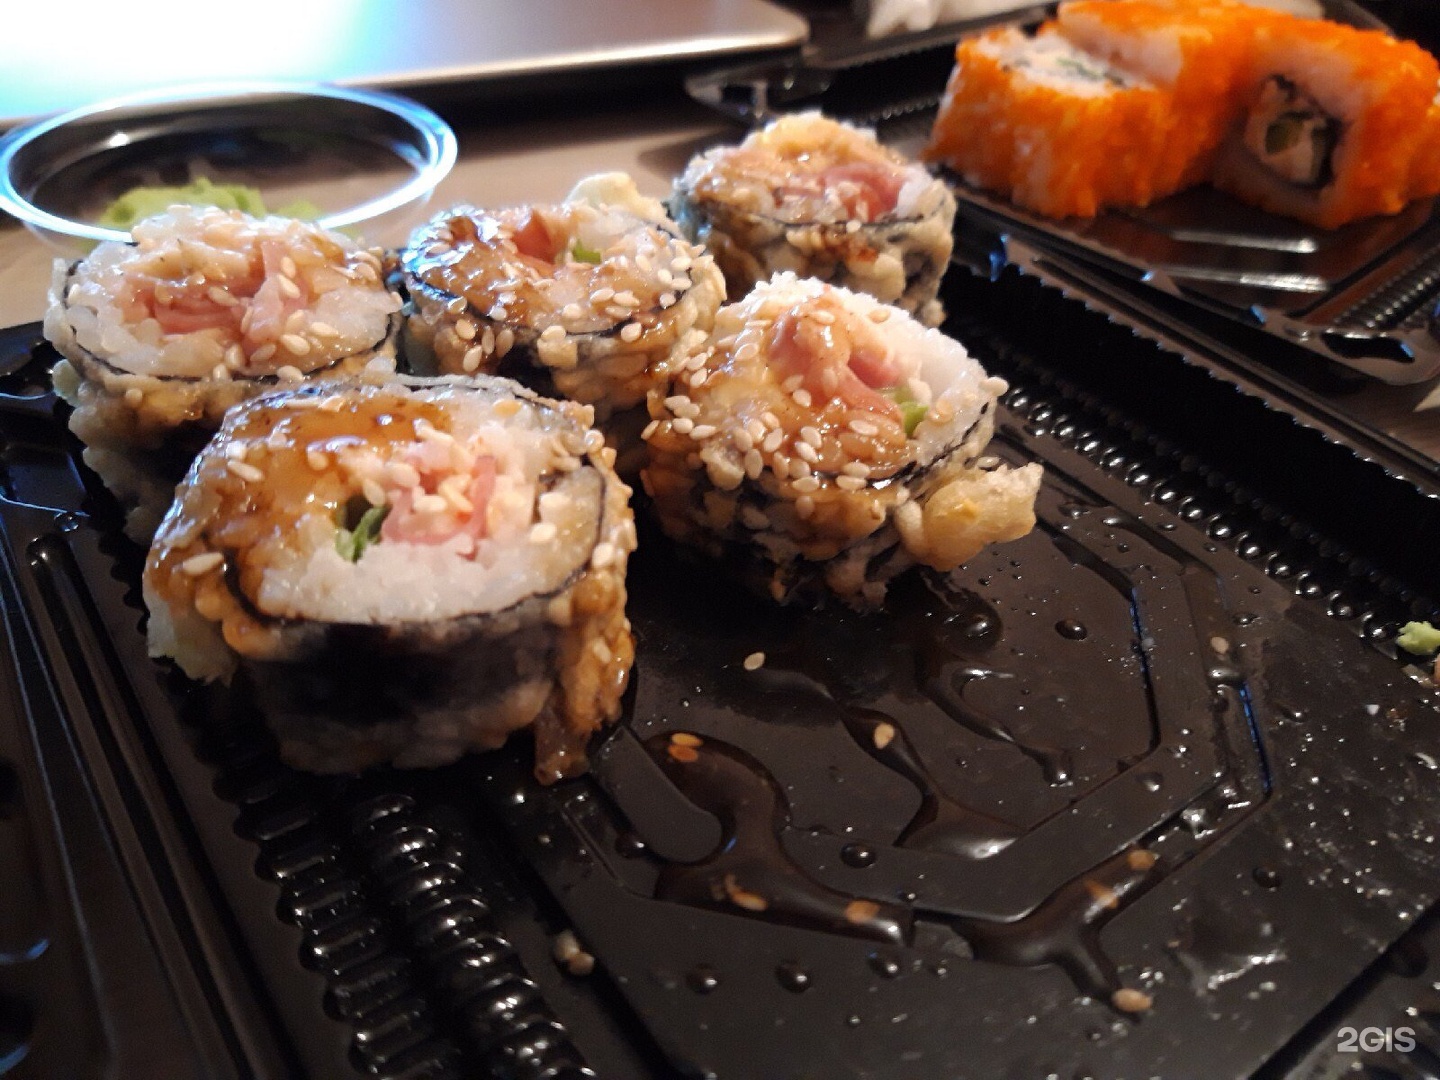 Японори суши в Тюмени. Энджой суши. Японори заказать